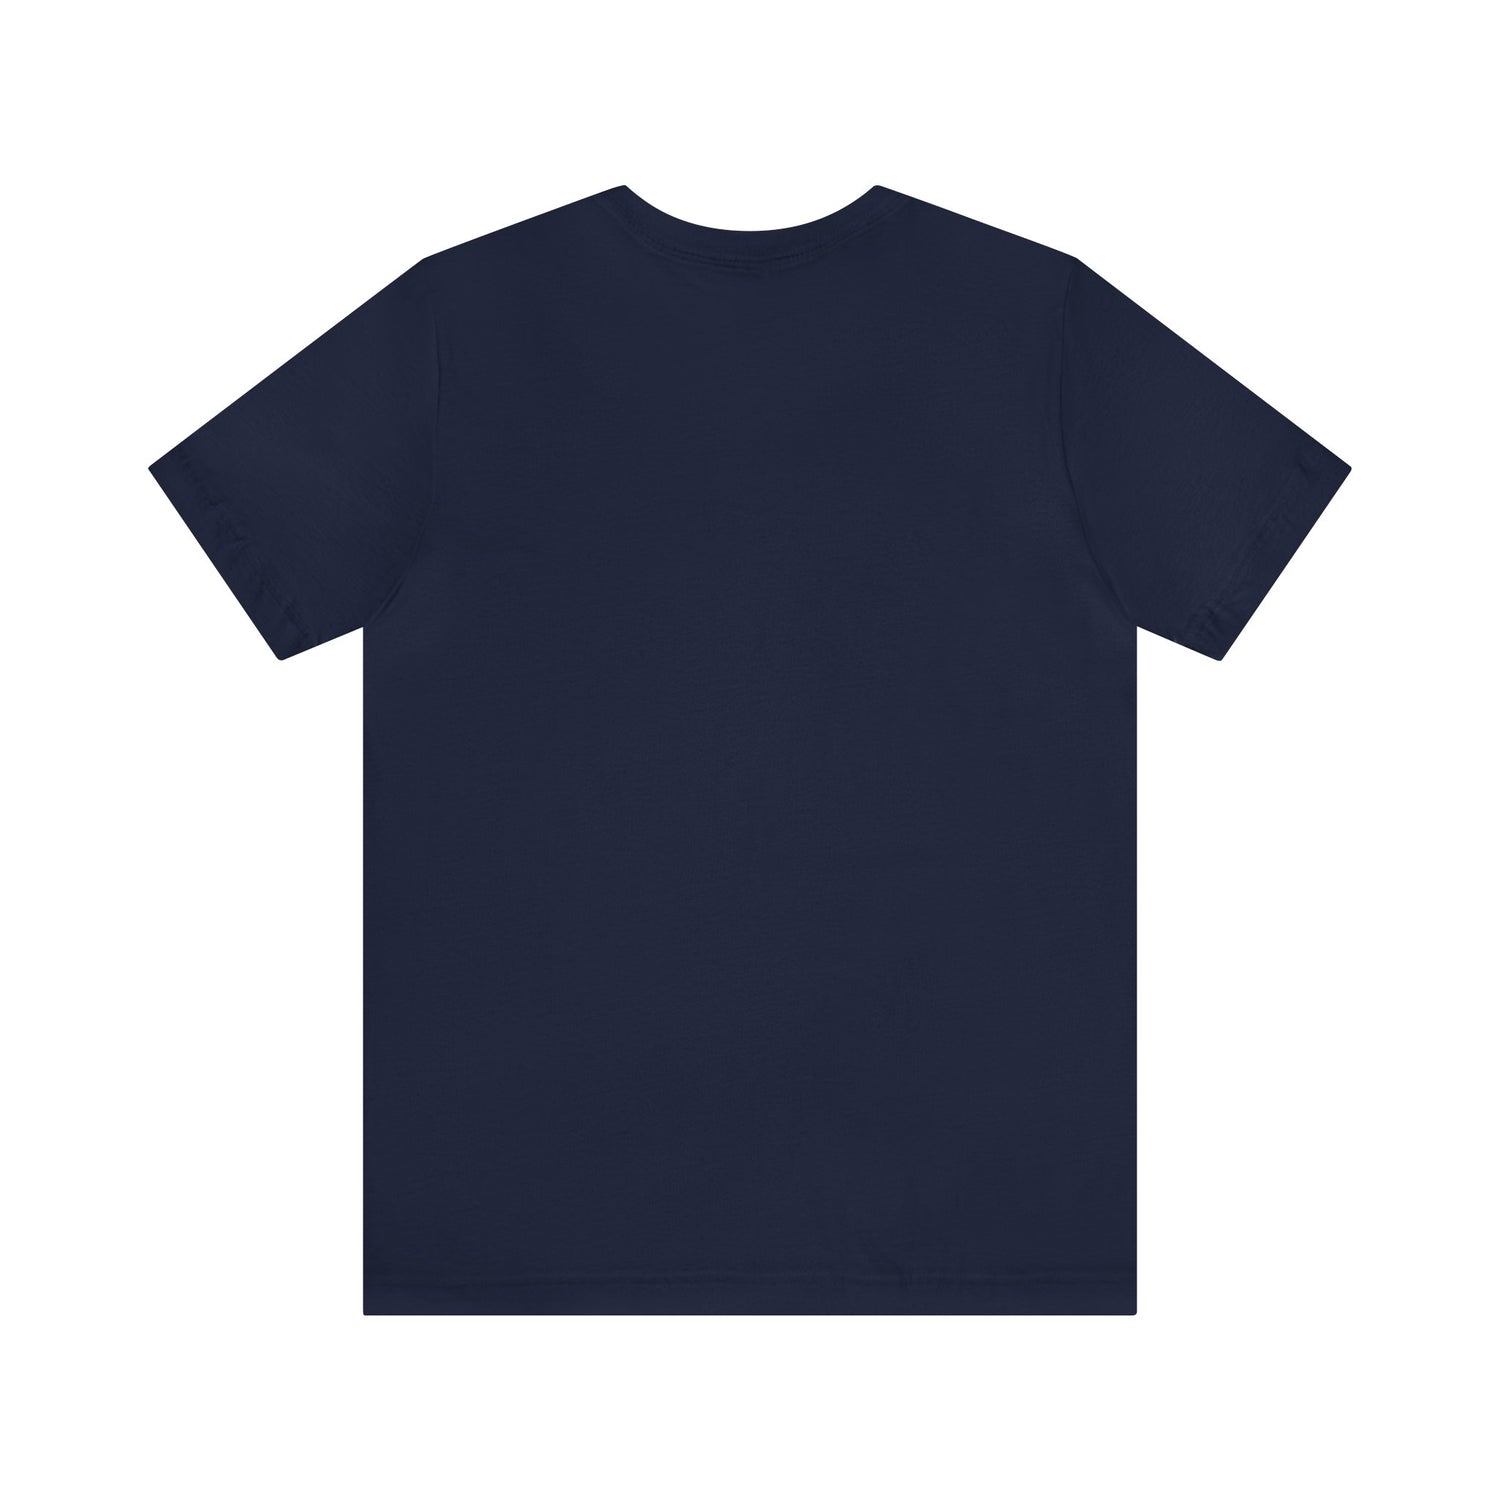 Engineer Gift Idea | For Mechanics | Mechanic T-Shirt T-Shirt Petrova Designs